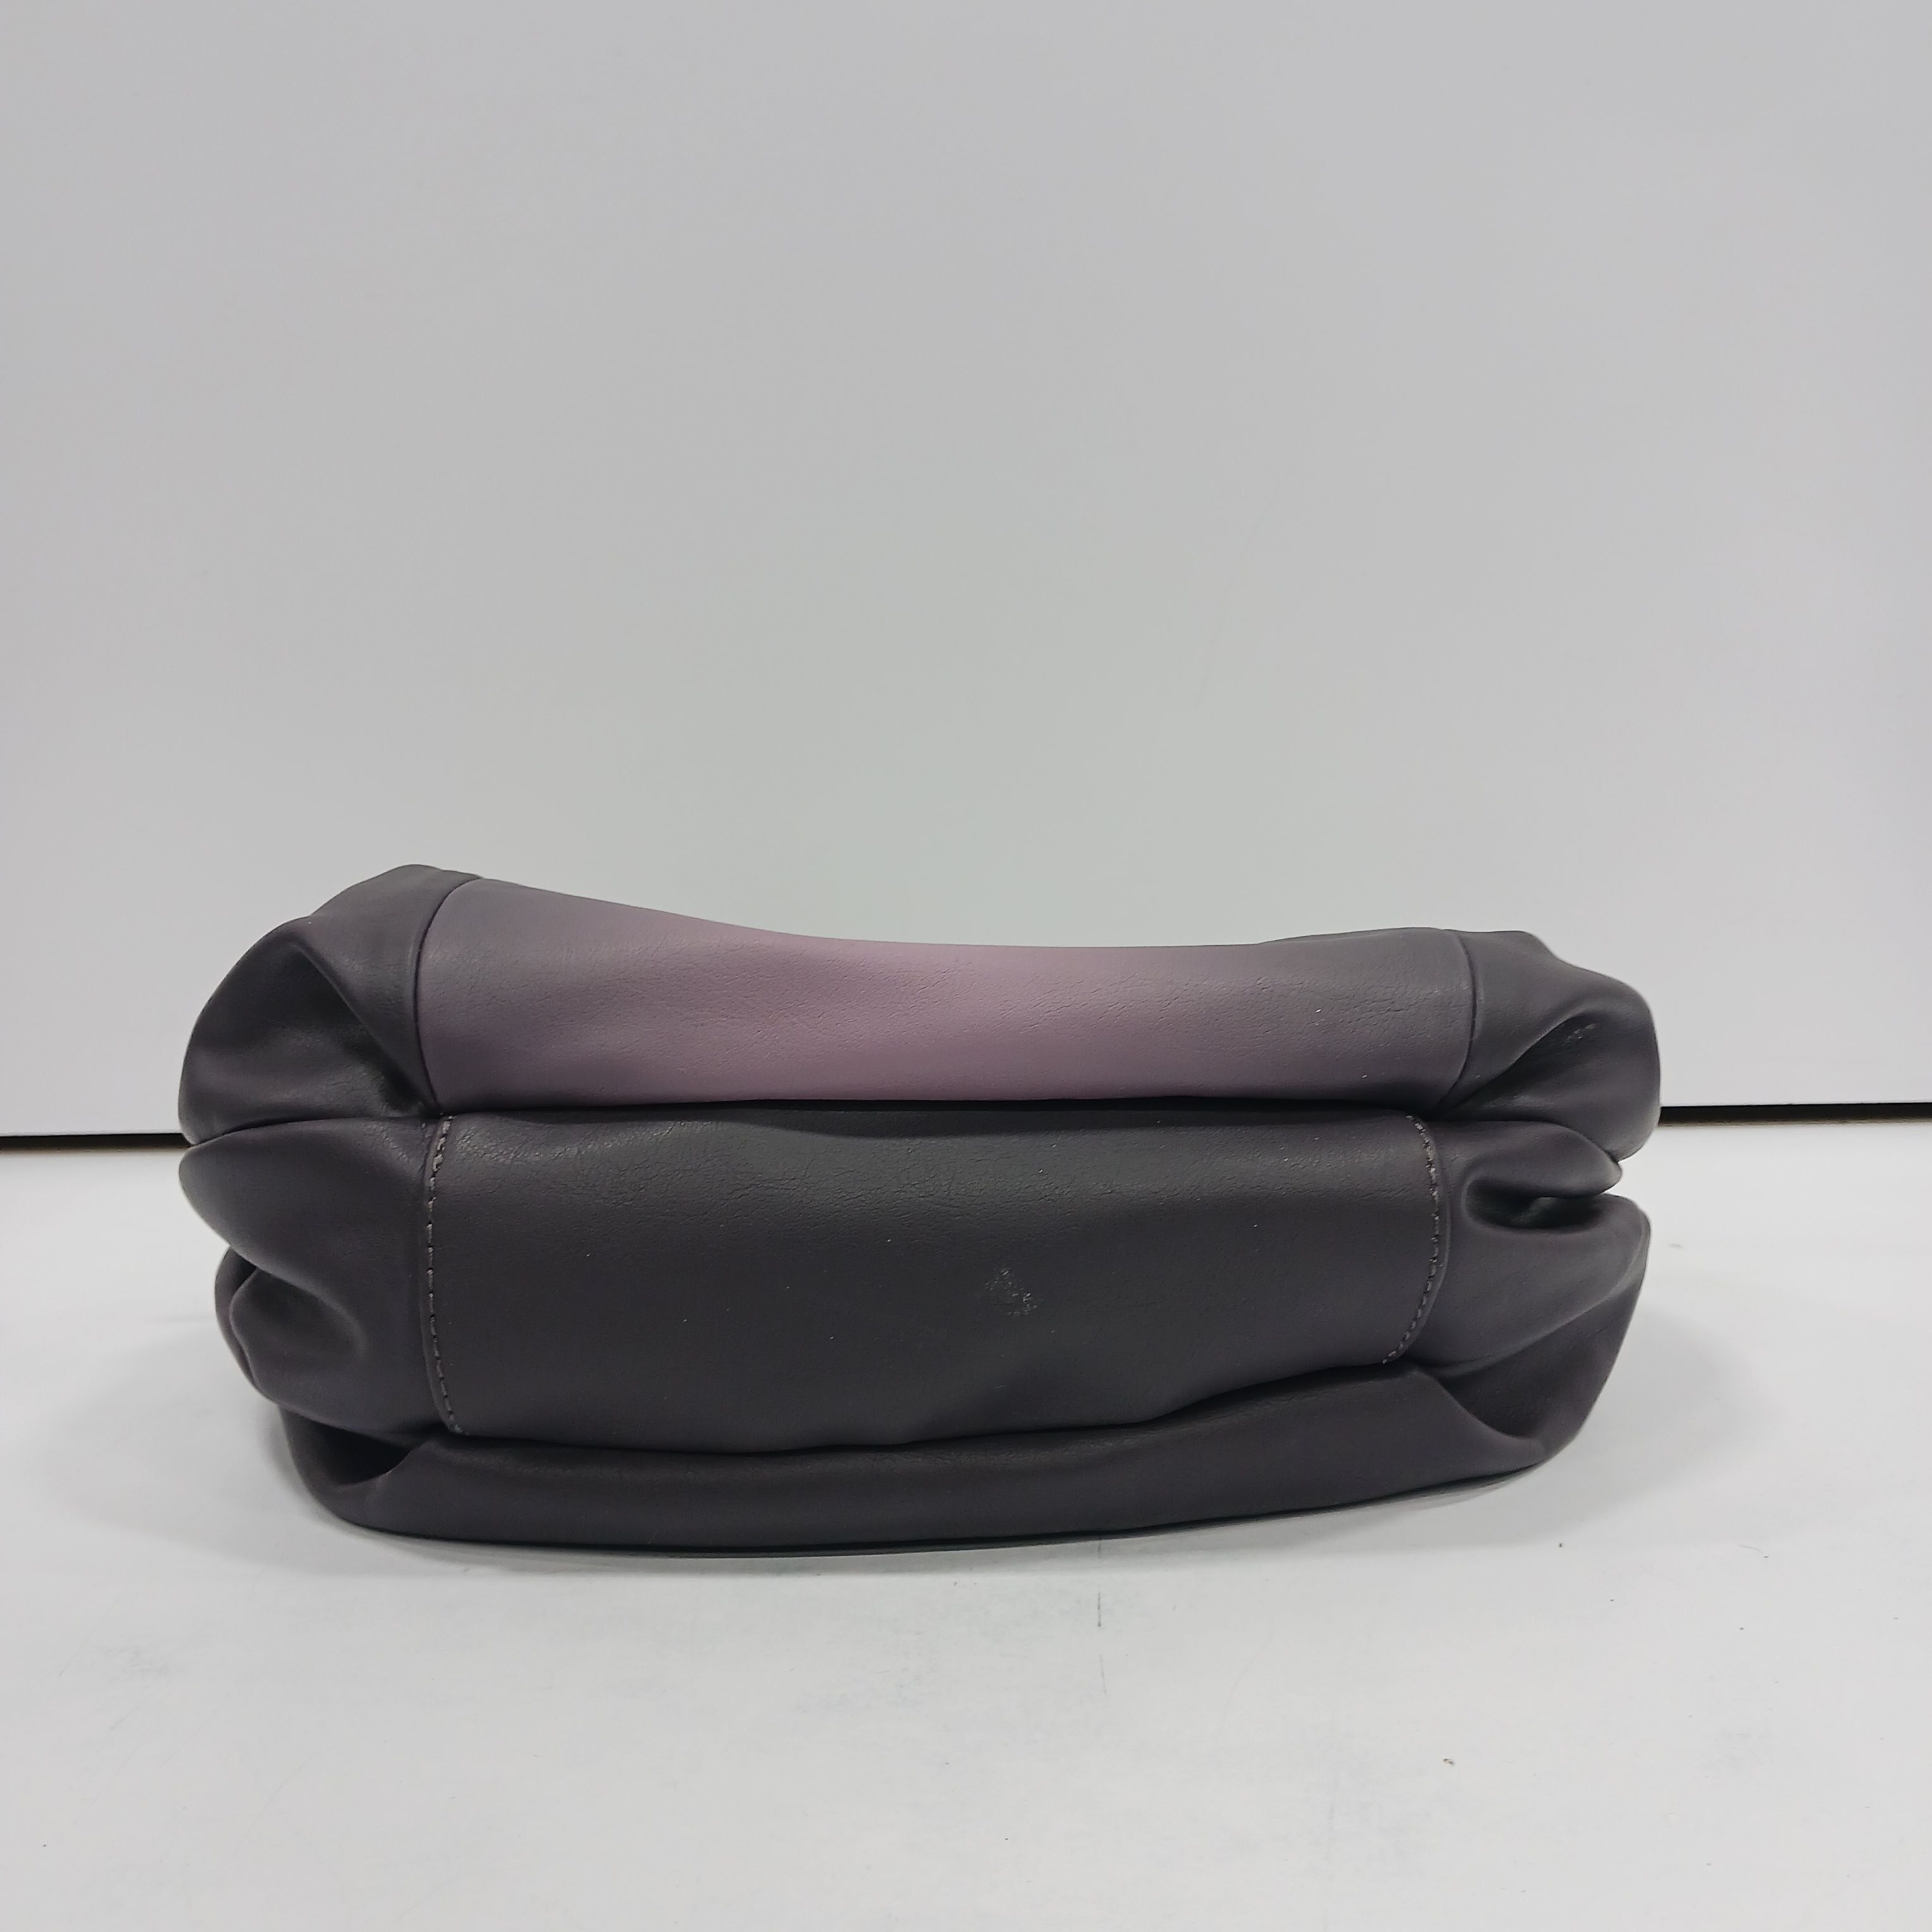 55% OFF on Kreative Bags Women Purple Shoulder Bag on Flipkart |  PaisaWapas.com